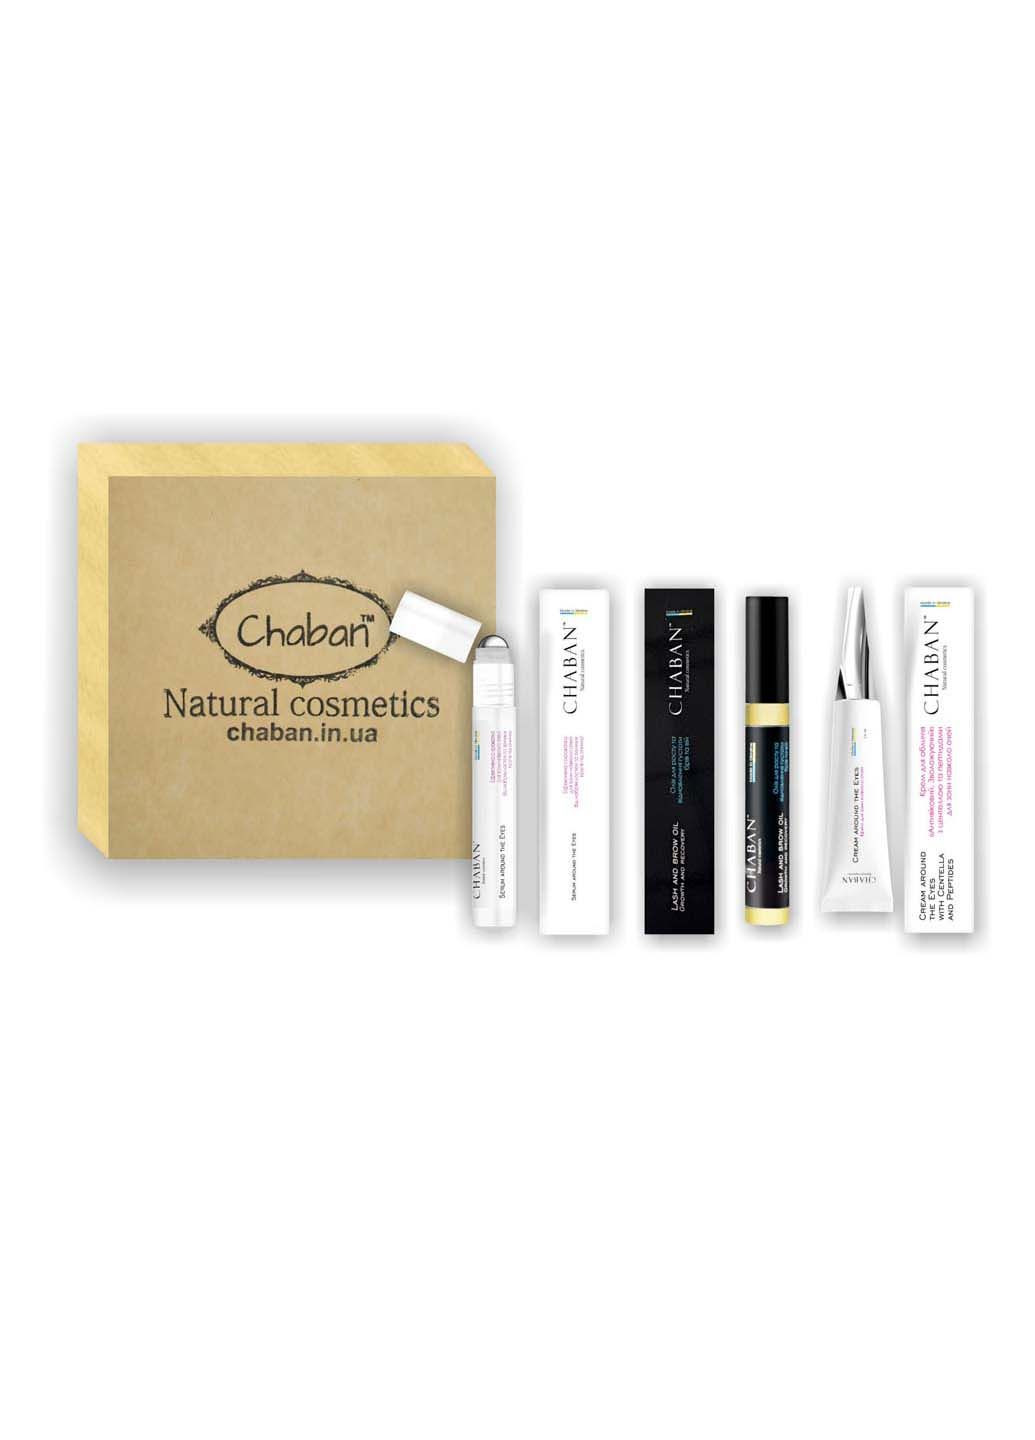 Подарунковий набір Beauty Box №16 Чарівні очі Chaban Natural Cosmetics (280918374)